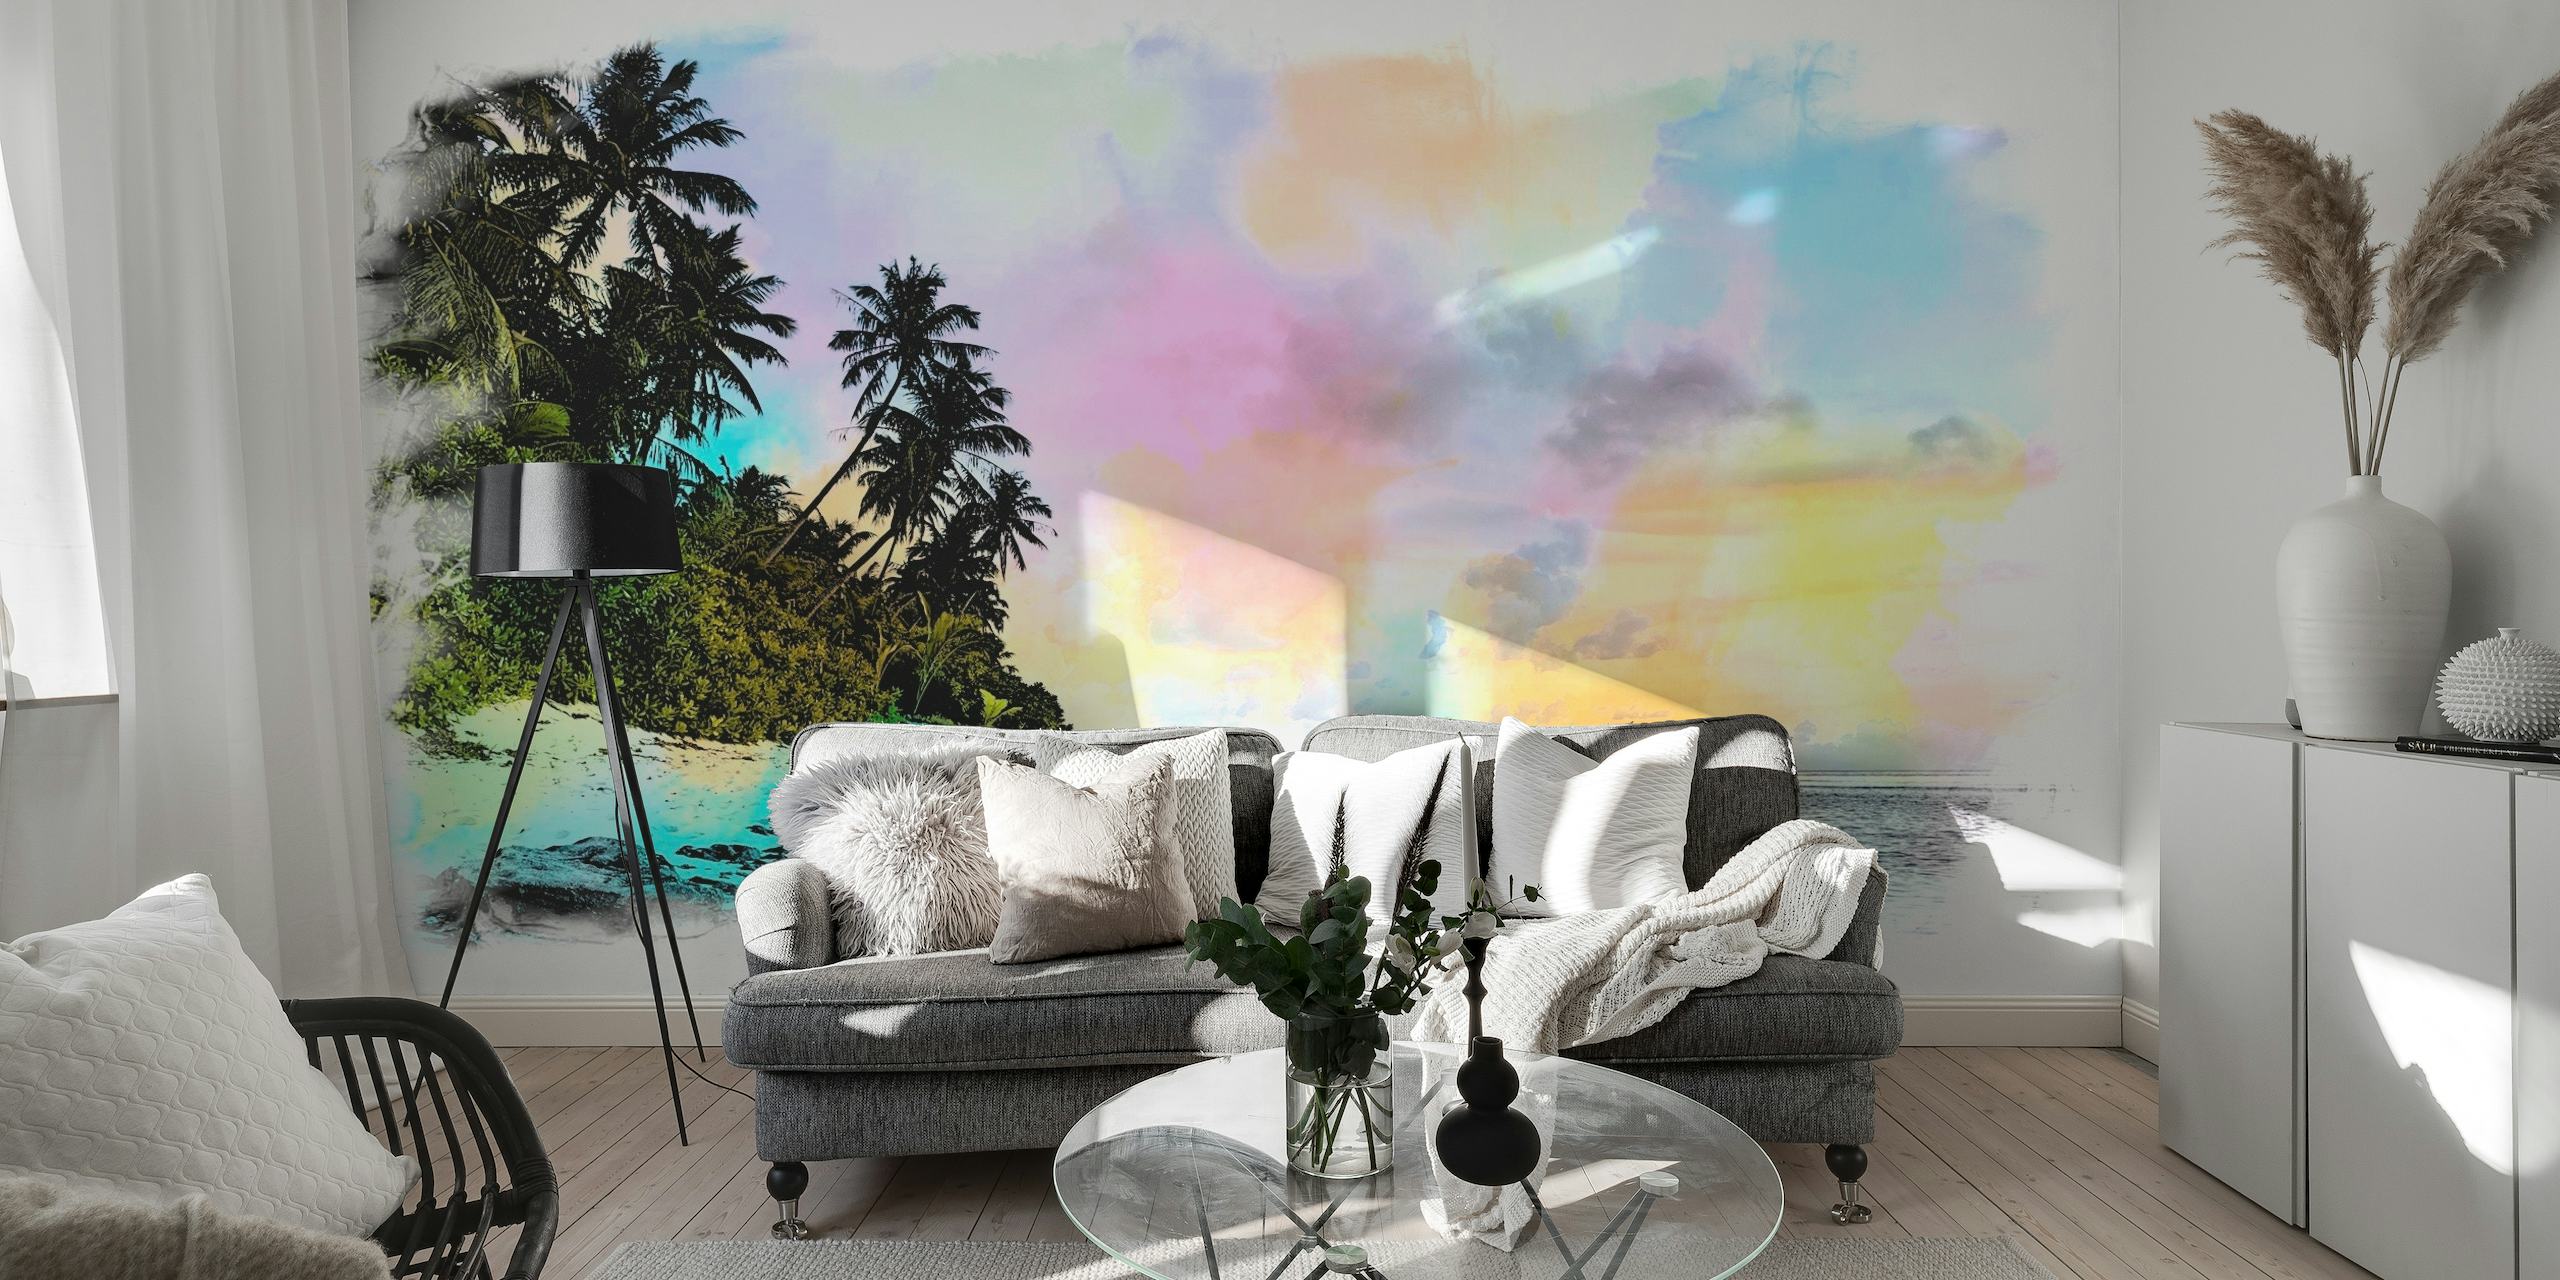 Représentation artistique à l'aquarelle d'une plage d'été avec des palmiers et un ciel pastel